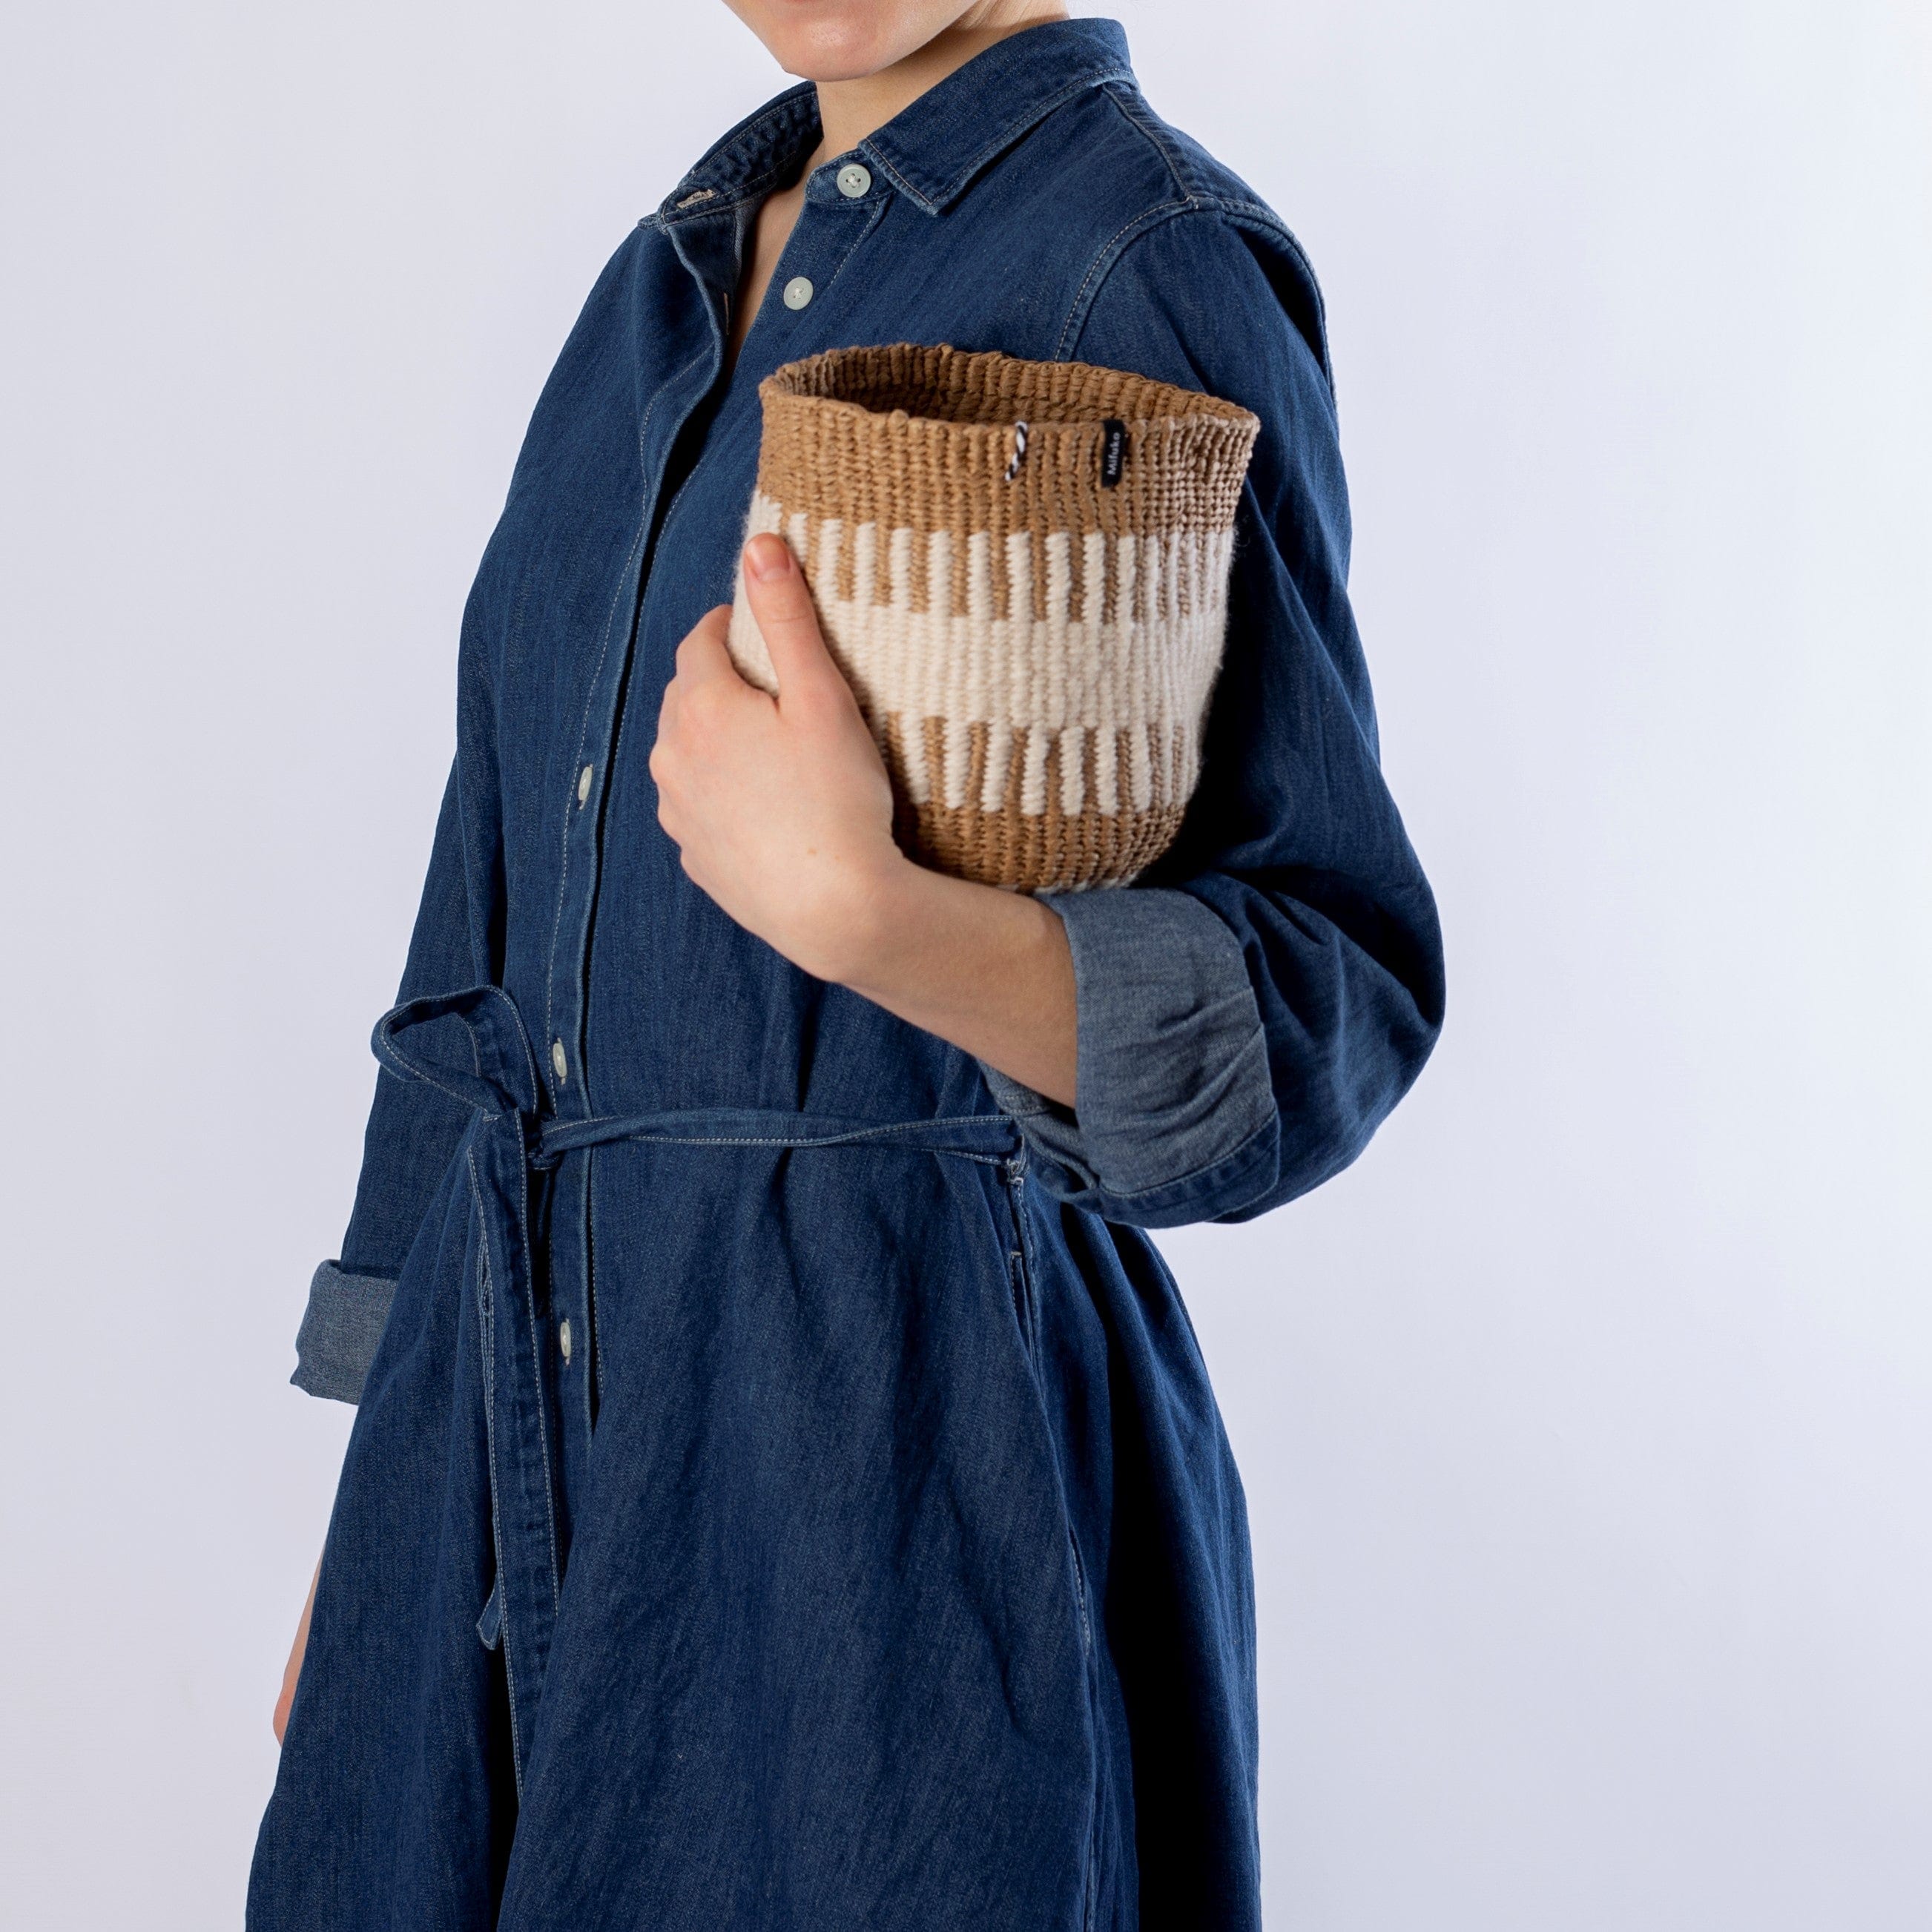 Mifuko Wool and paper Small basket XS Pamba basket | White rib weave XS